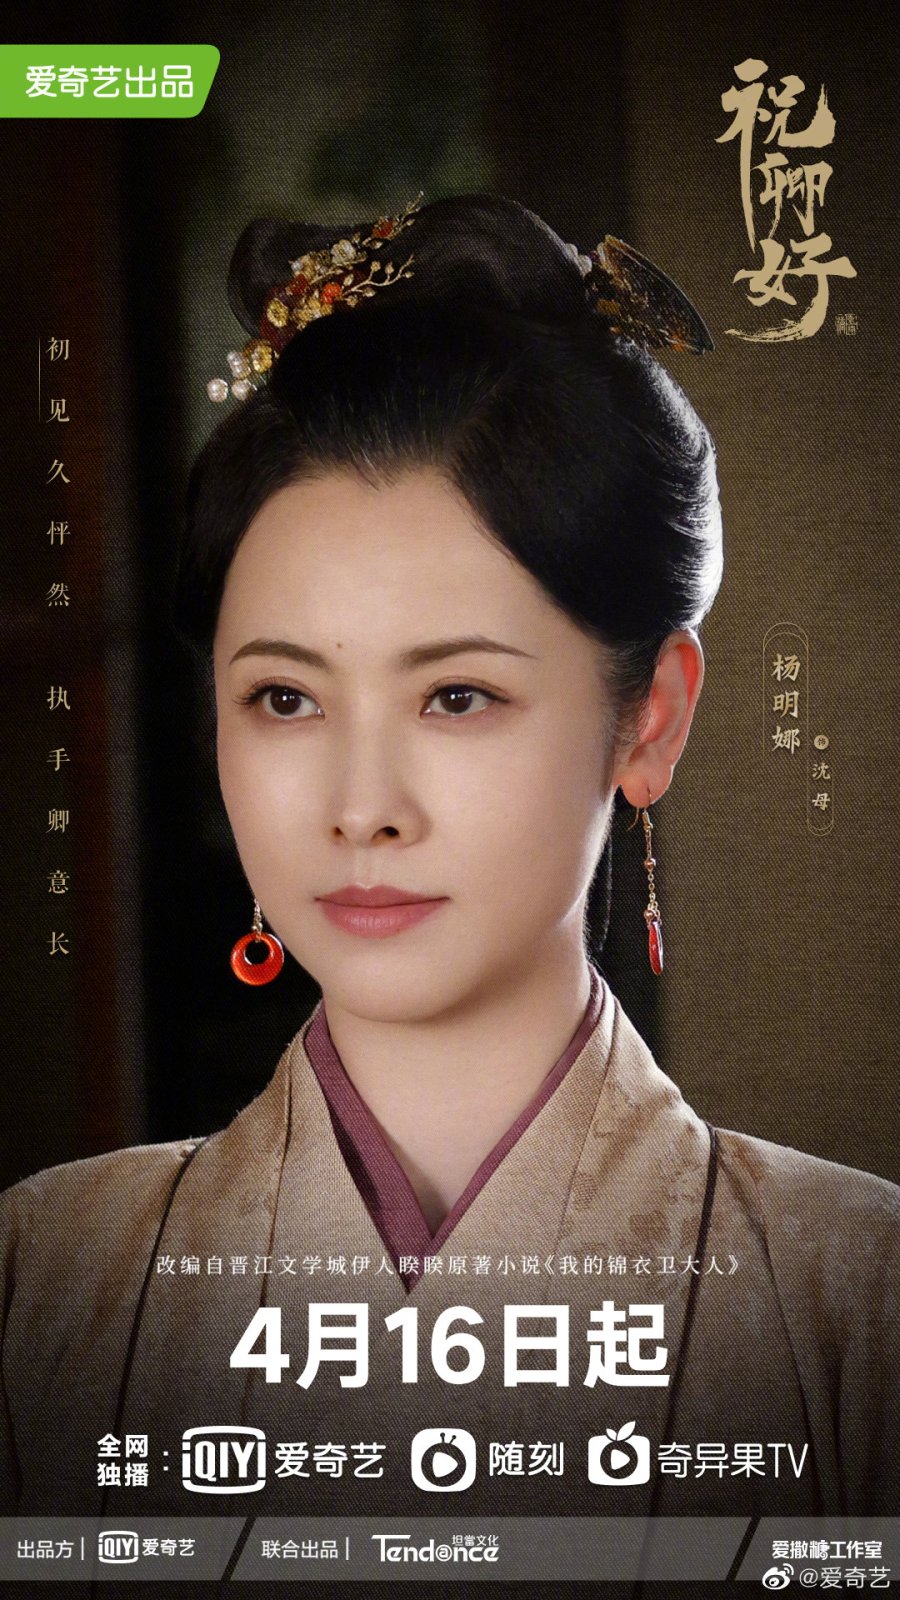 My Sassy Princess - Yang Ming Na #3045991 - MyDramaList